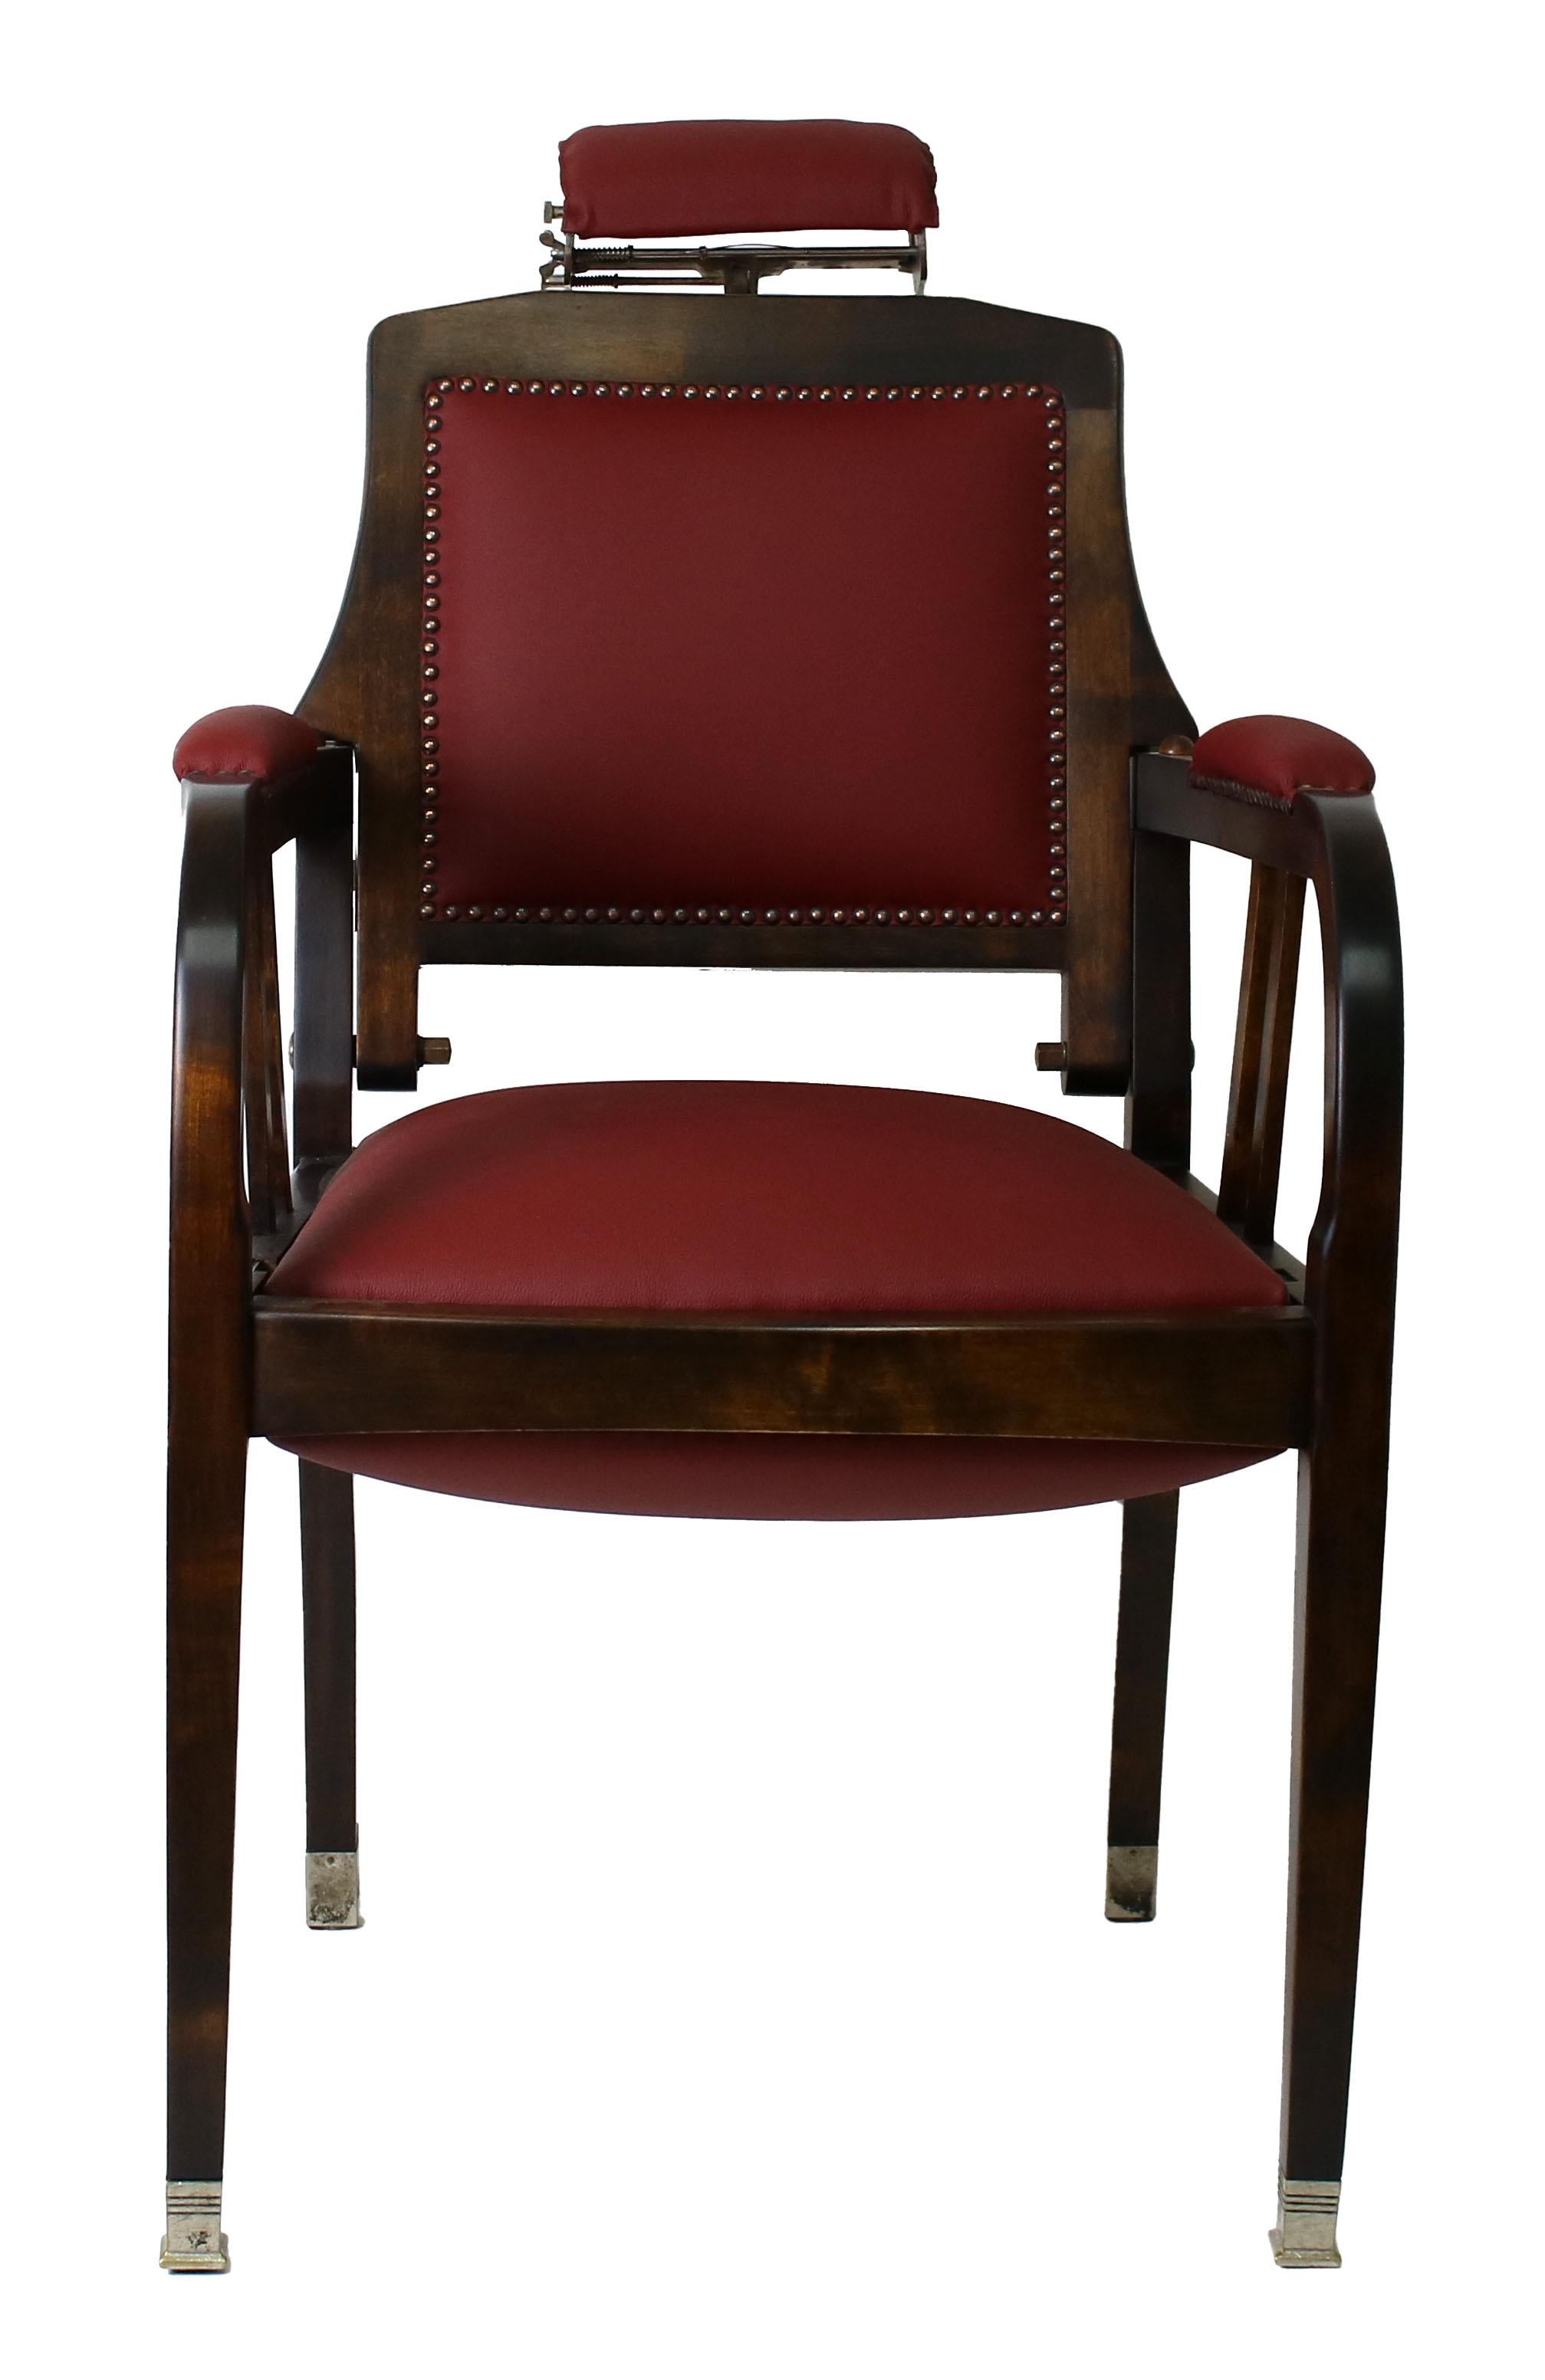 Il s'agit d'un magnifique fauteuil de barbier fabriqué par la société allemande Busser pour les Laboratoires Willen, Parfumerie Monréve à Bâle, en Suisse. Le fauteuil de barbier est entièrement fonctionnel. La sellerie est restaurée avec du cuir